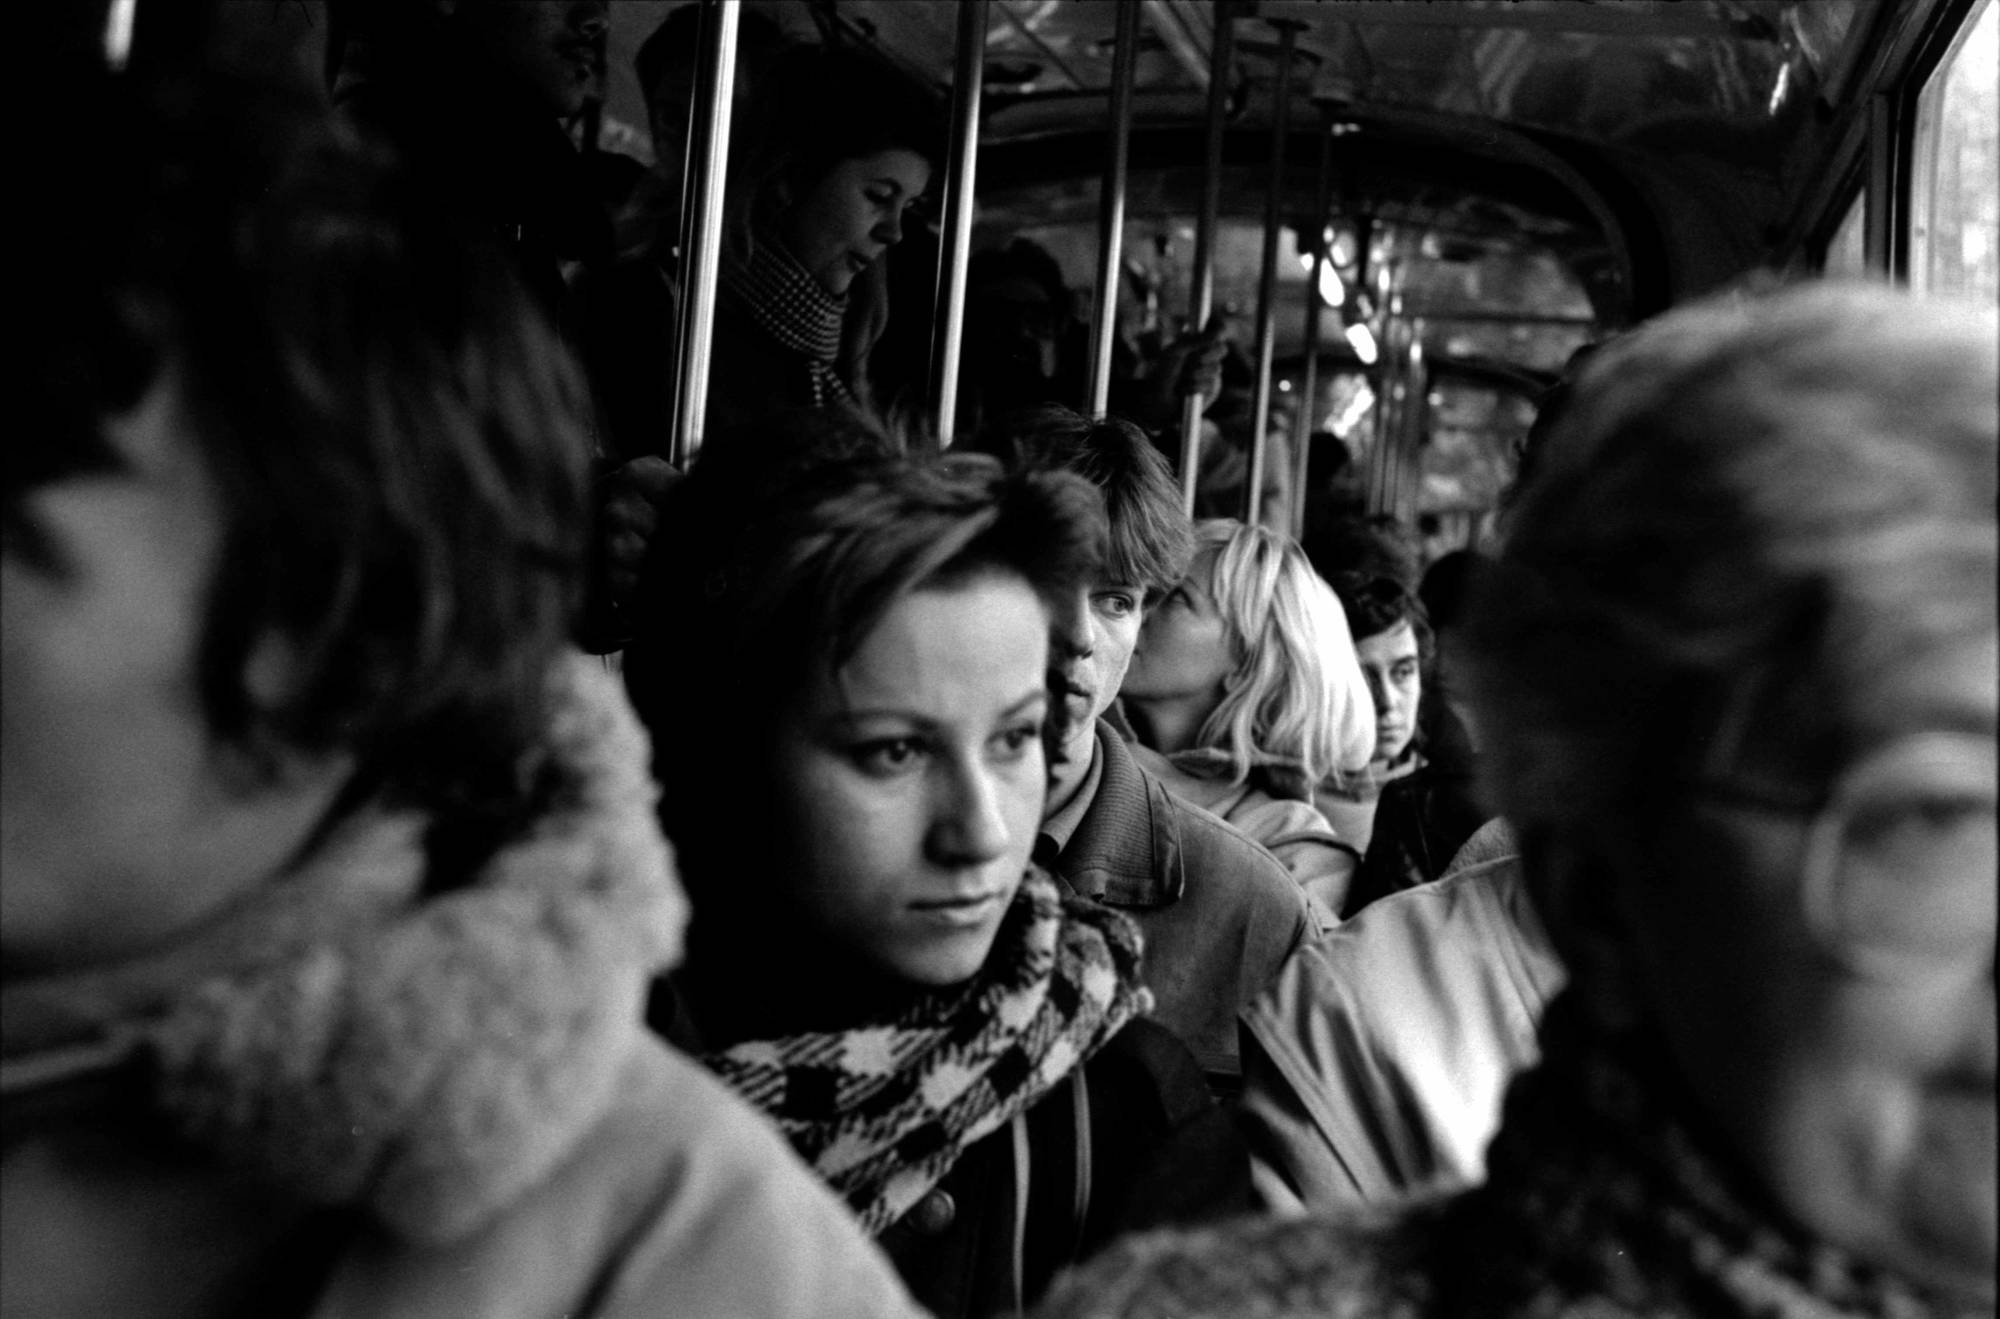 tram, amsterdam, jaren, 80, passagiers, judocus, van, soest, foto